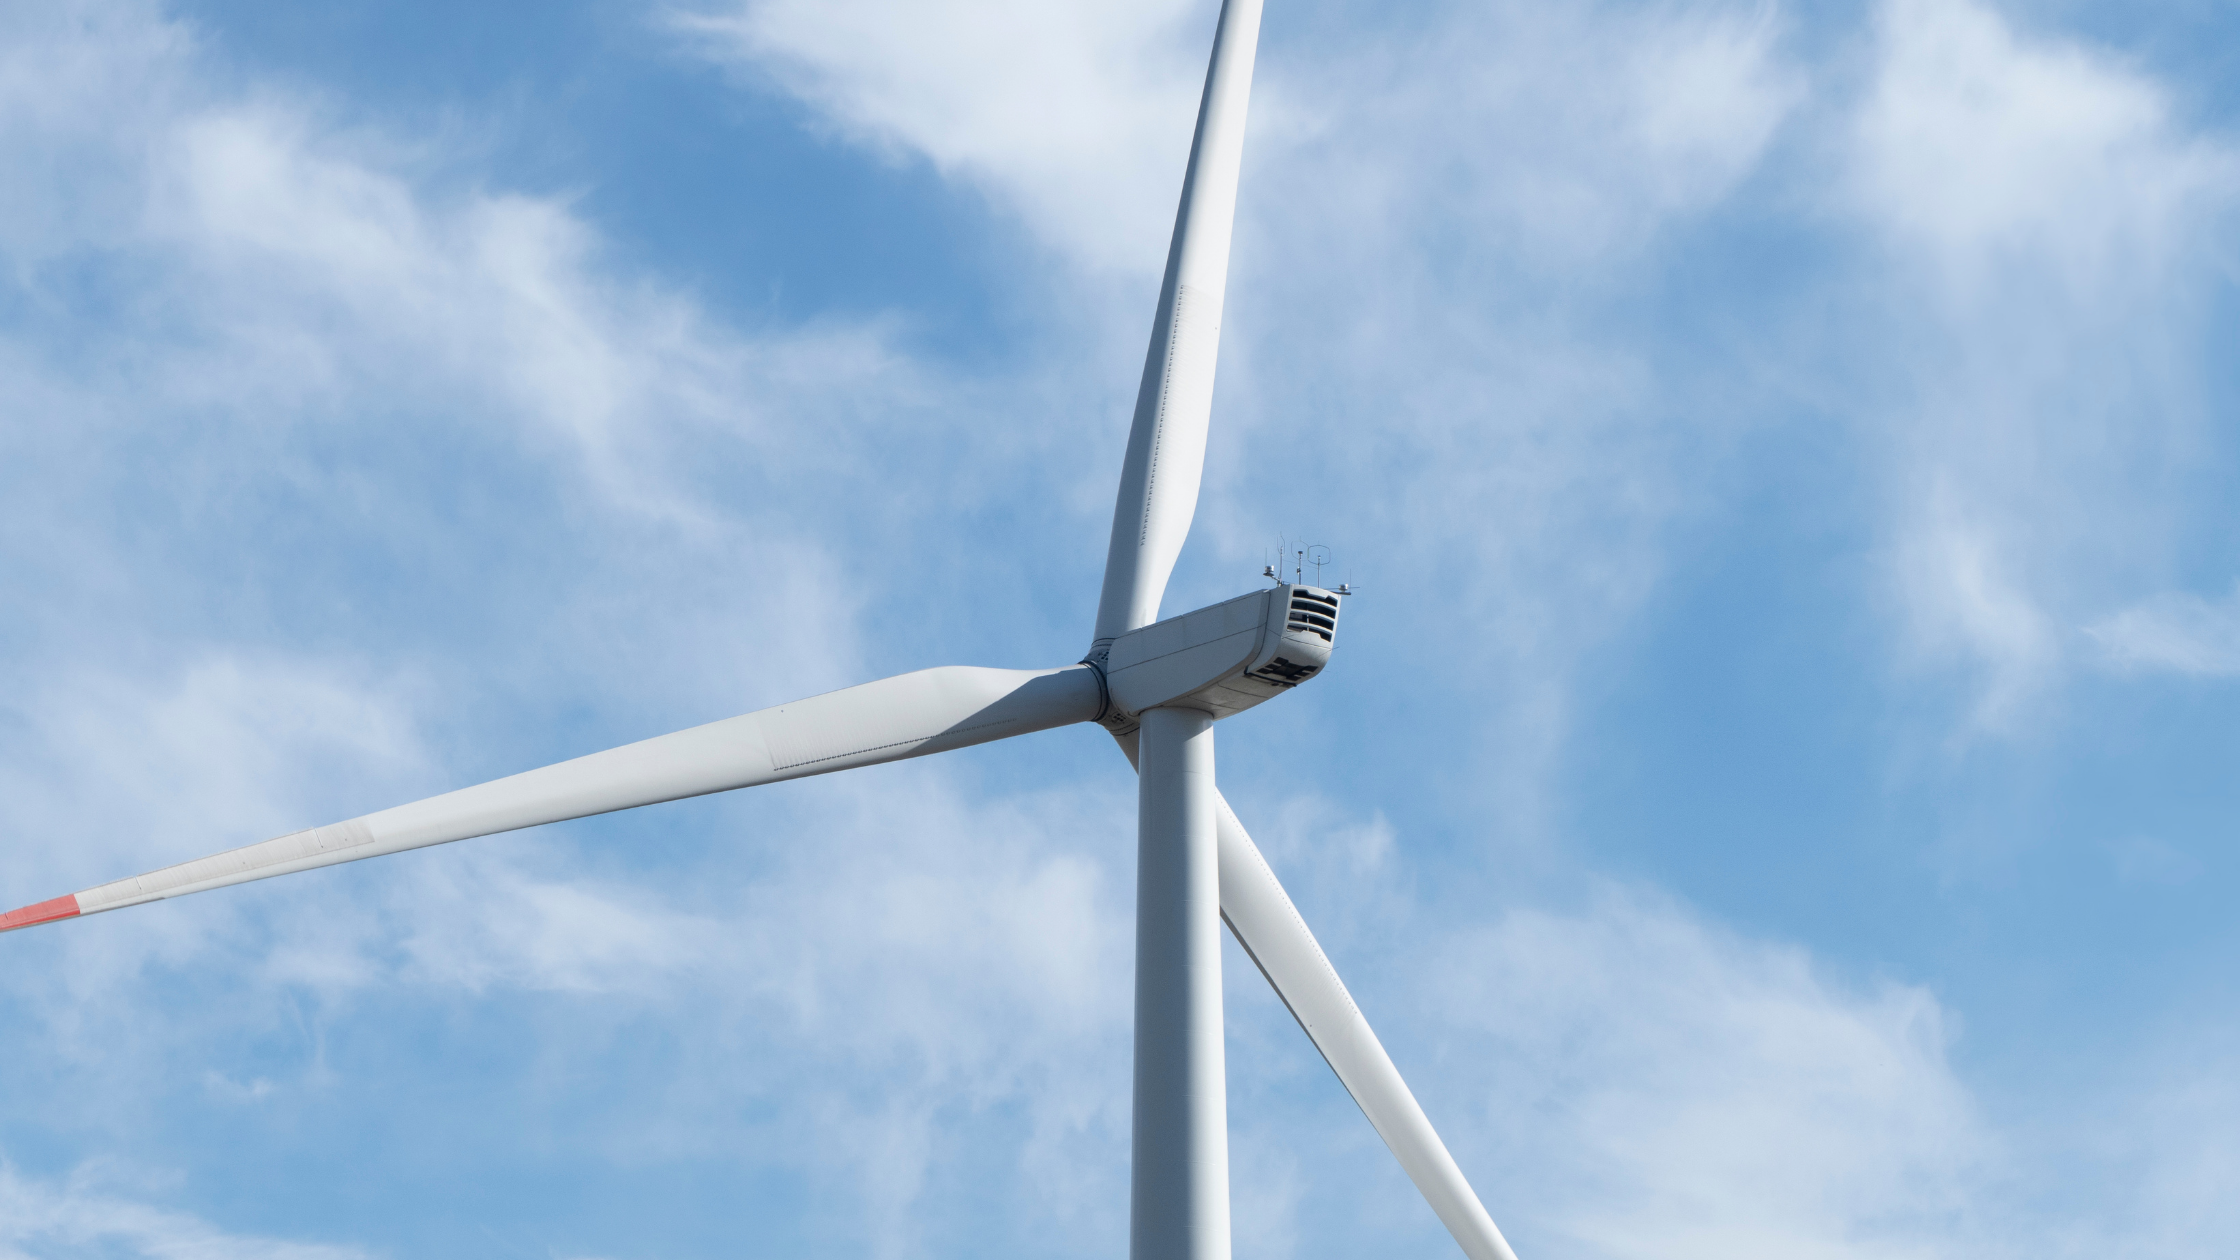 アジア太平洋地域の風力タービンロータブレード市場は、2027年までに12.0%の成長が見込まれる